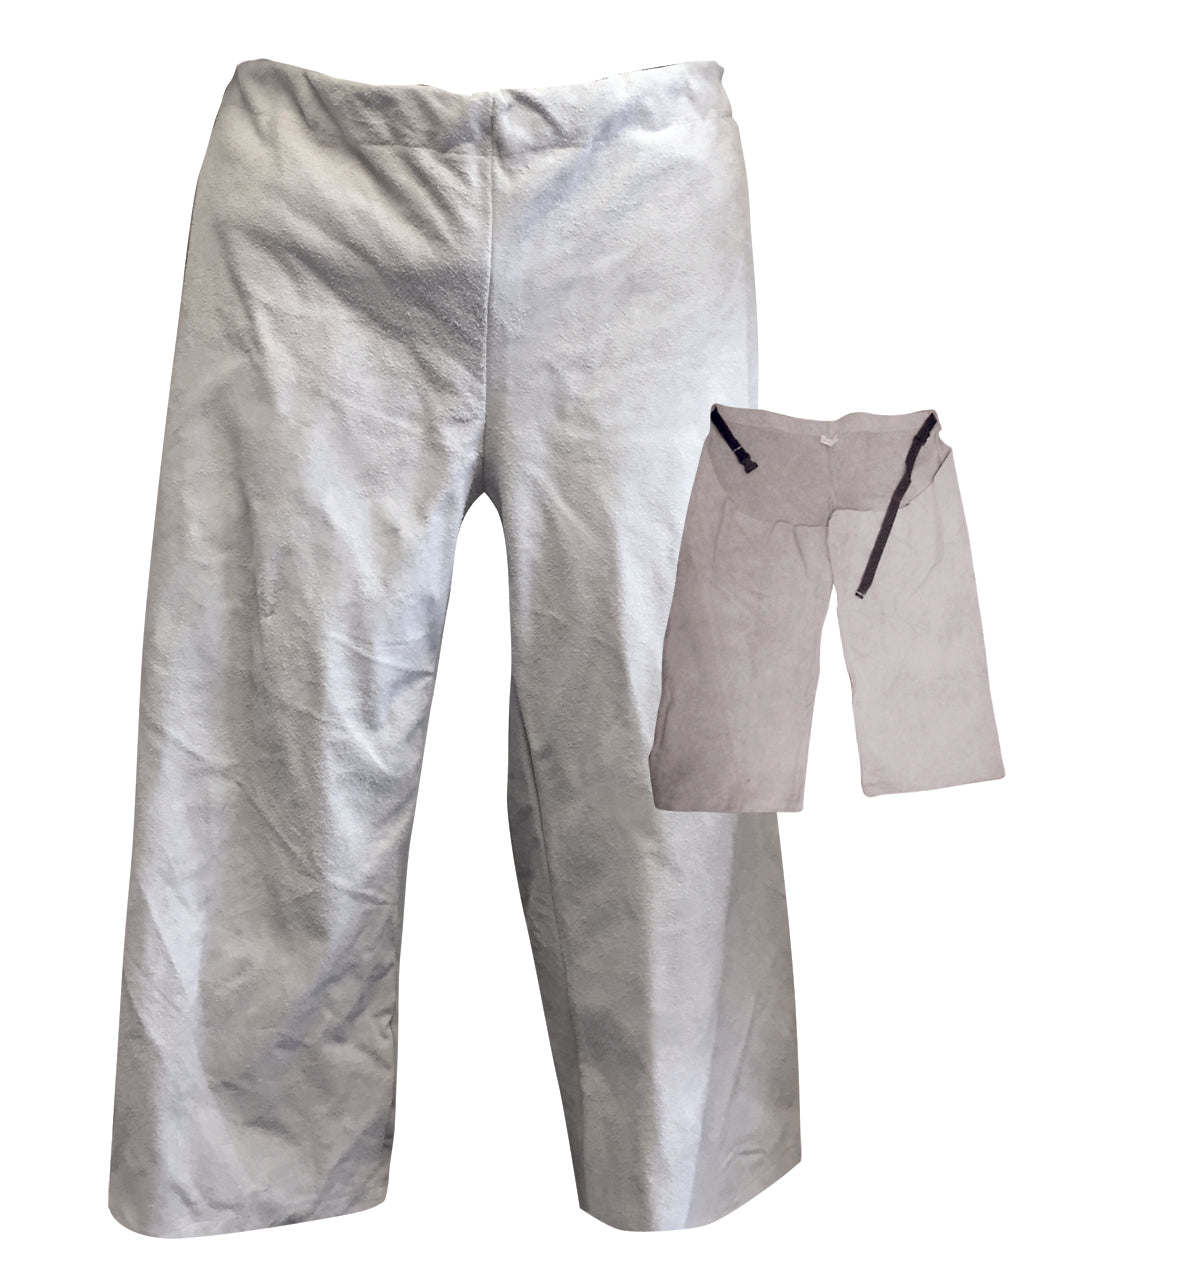 Tillman 5350 Brown Leather Pants (1 Each) – weldingoutfitter.com